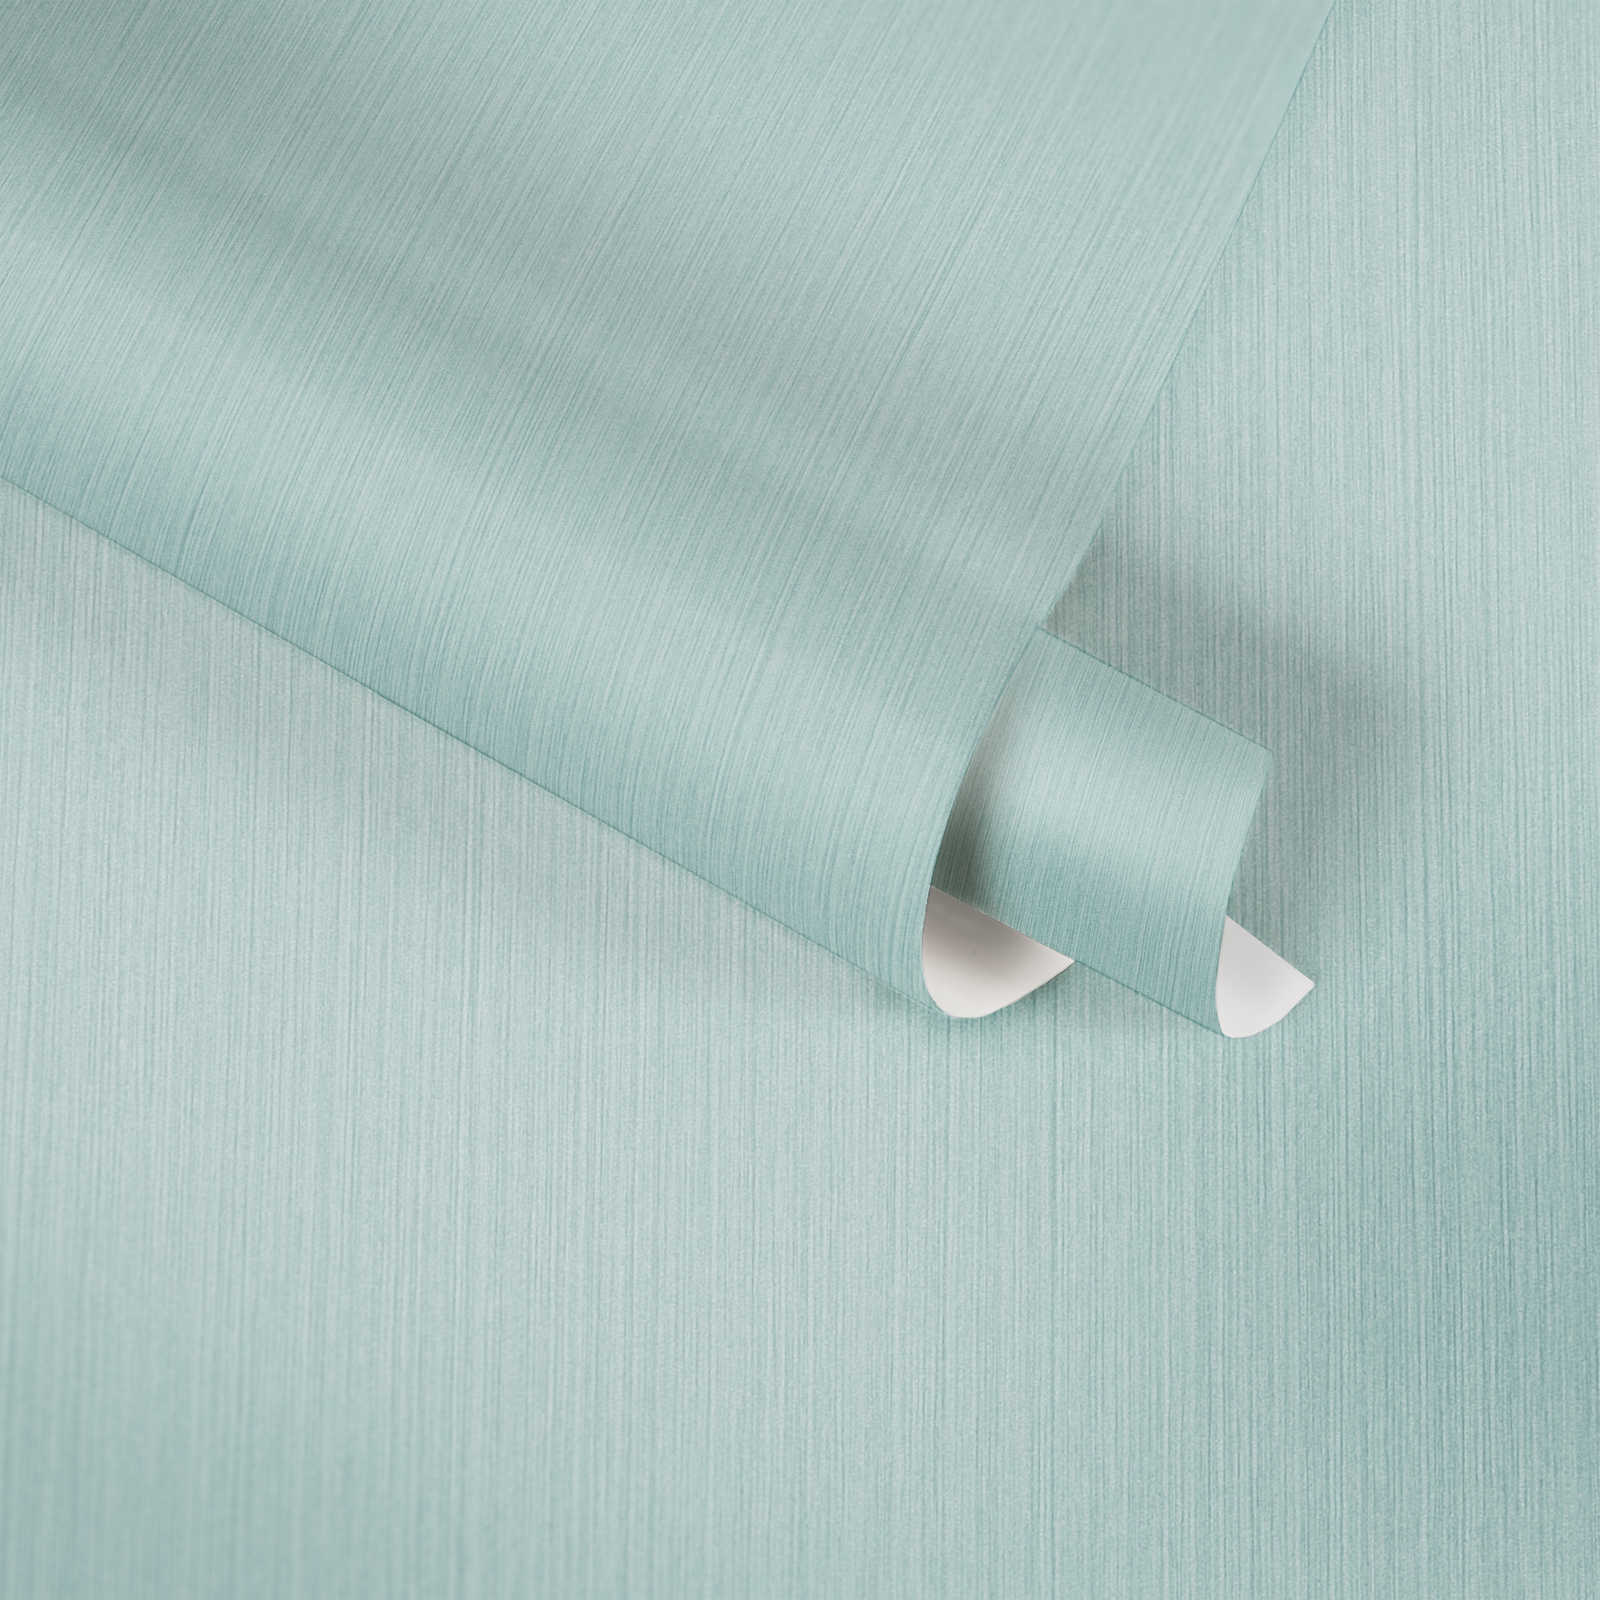             Effen behangpapier lichtblauw met gevlekt textieleffect van MICHALSKY
        